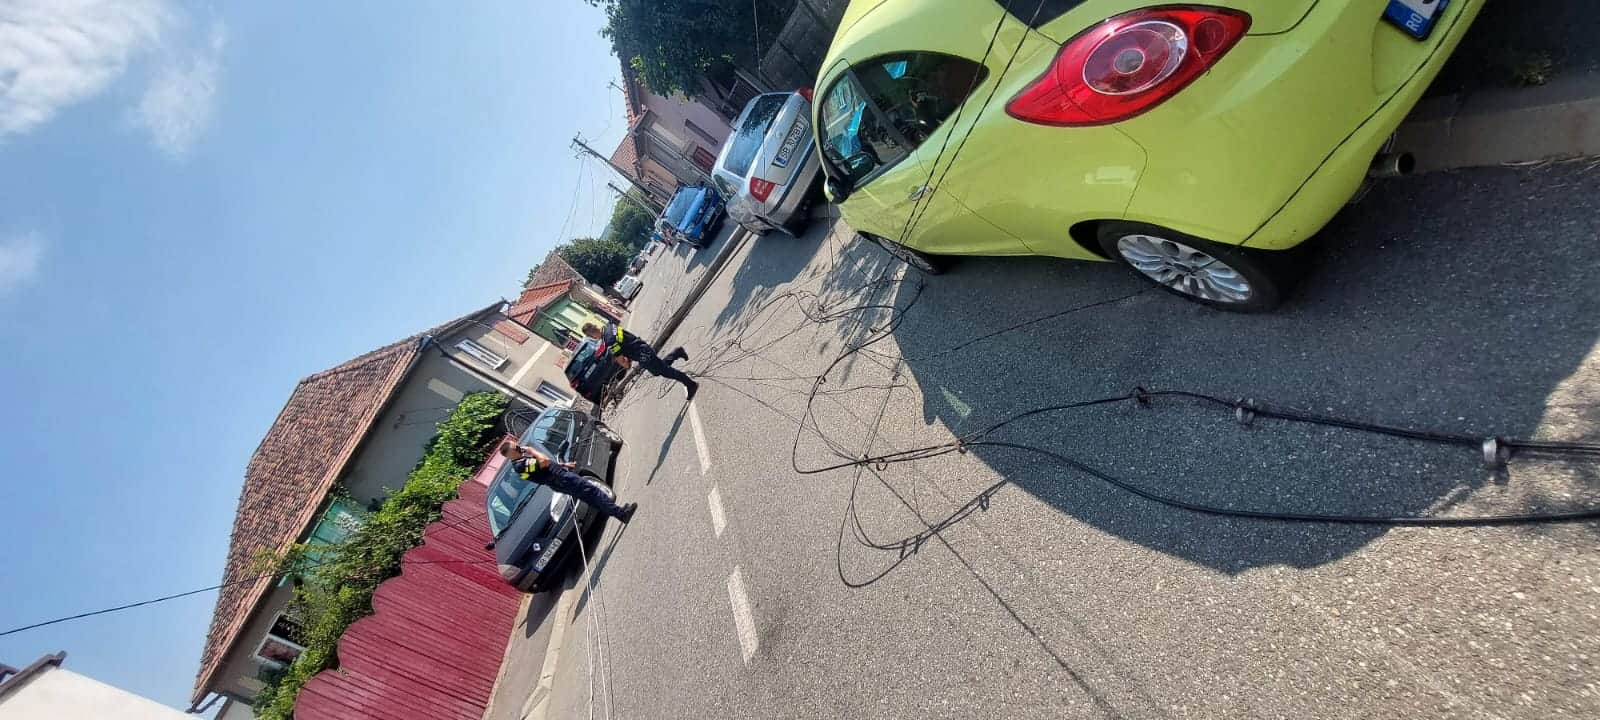 doi stâlpi căzuți în cartierul reșița, după ce o mașină de la soma a agățat firele de curent (foto, video)